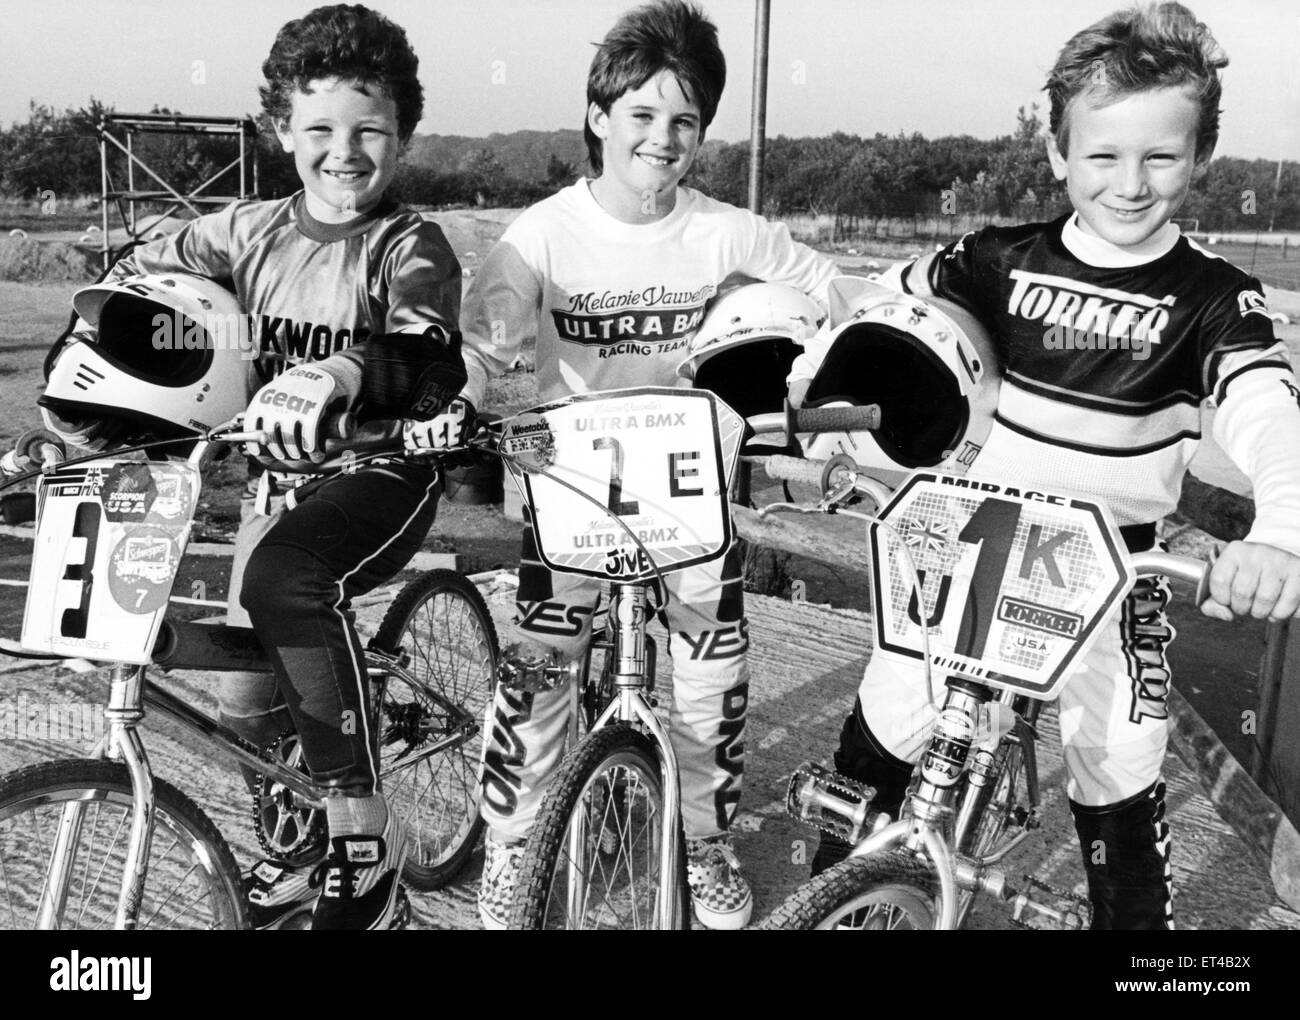 Ces 3 motards du nord-est sont sommet des palmarès au Royaume-Uni classement national de BMX. Le 30 septembre 1986. N° 1 est Gareth lames (à droite), n° 2 Peter Holland (centre) et n° 3 Michael Wood (à gauche). Banque D'Images